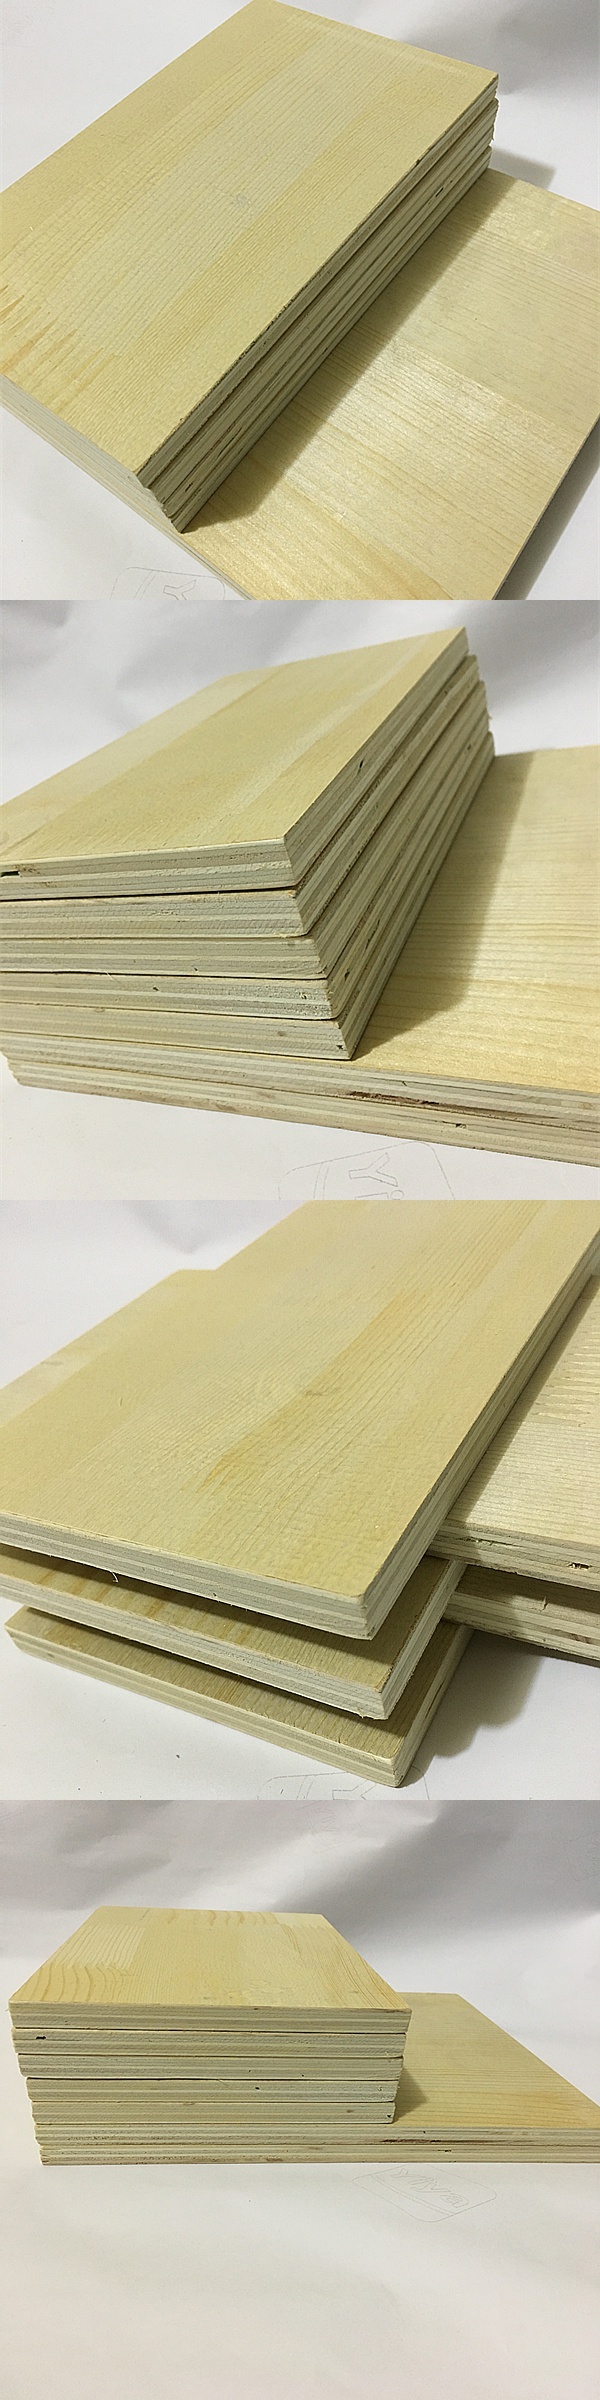 木板定制隔板货架木板衣柜隔板实木多层板置物木架板复合板压缩板安心